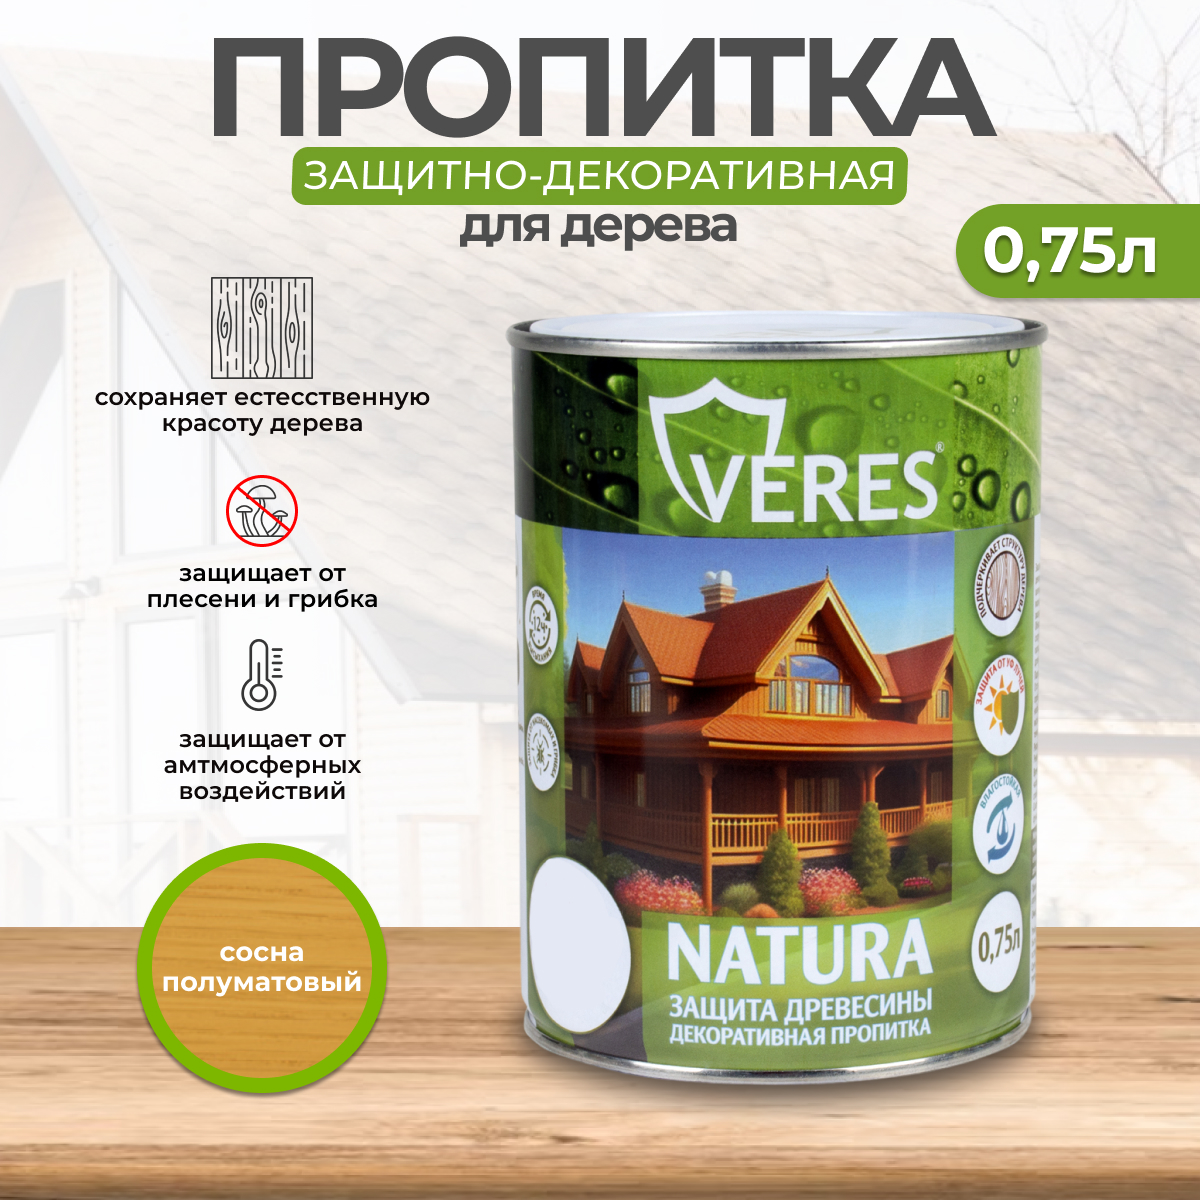 Декоративная пропитка для дерева Veres Natura полуматовая 0 75 л сосна, VR-125